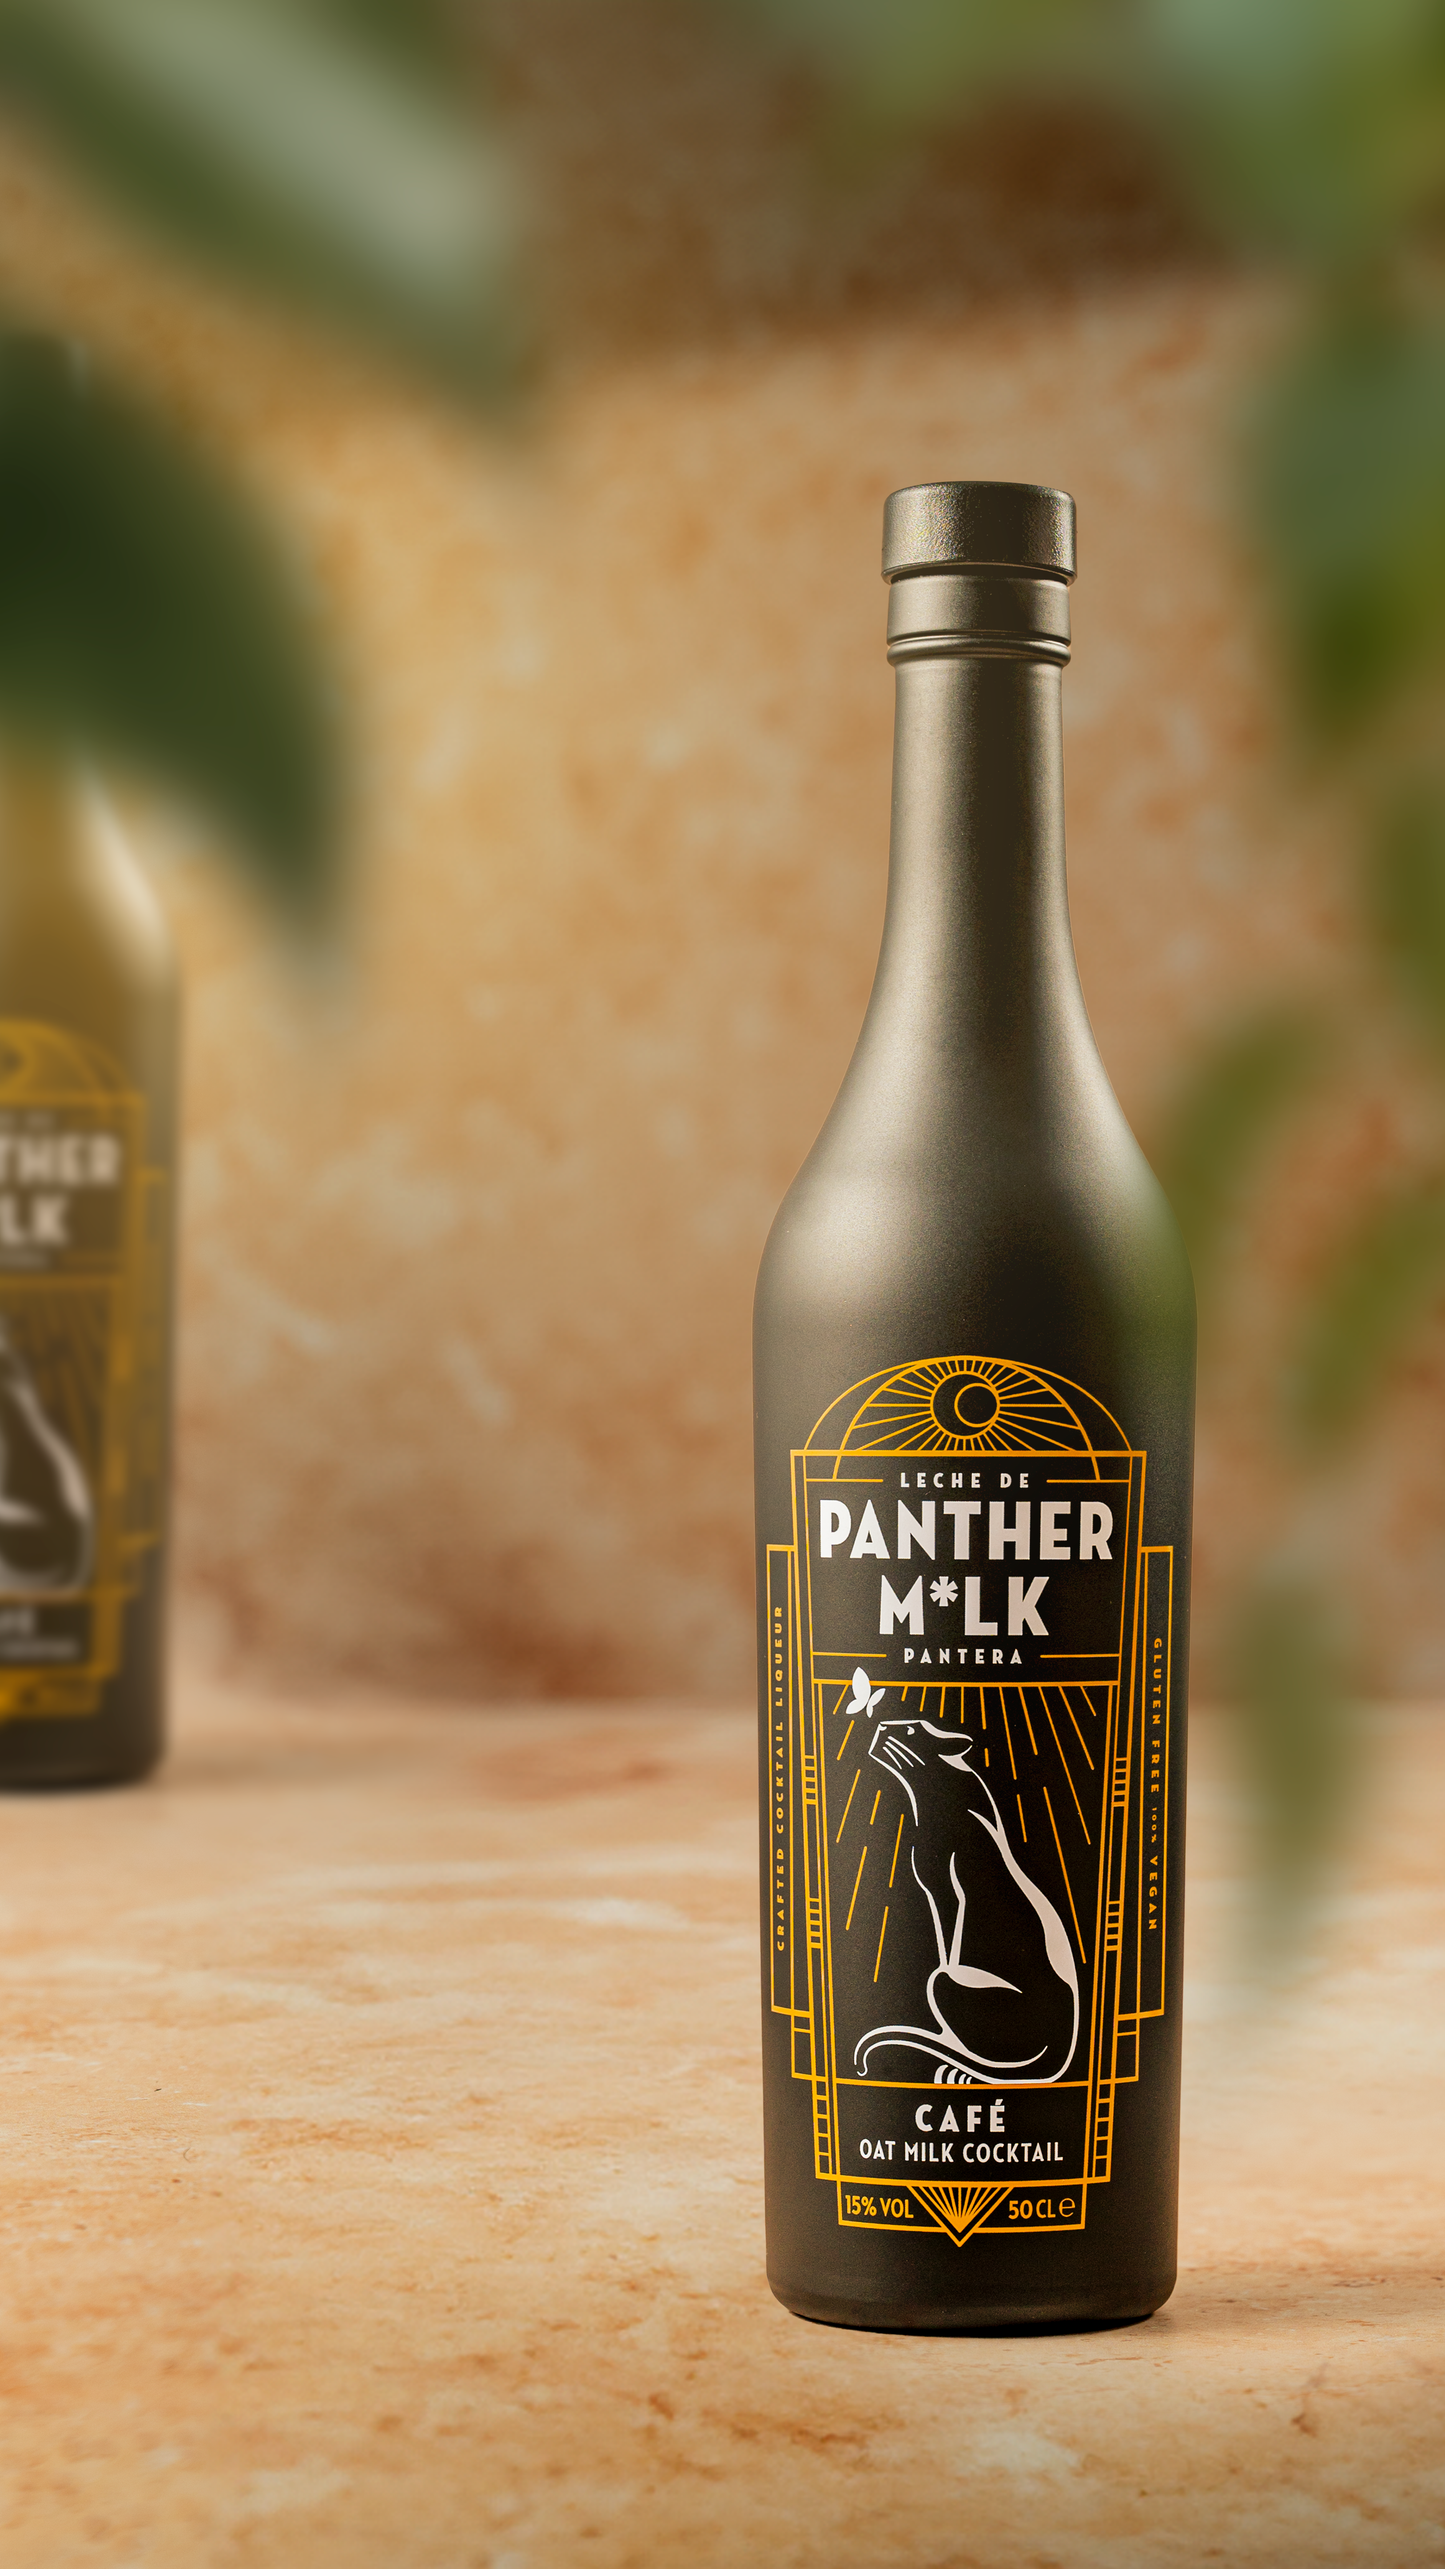 Panther M*lk Café 50cl